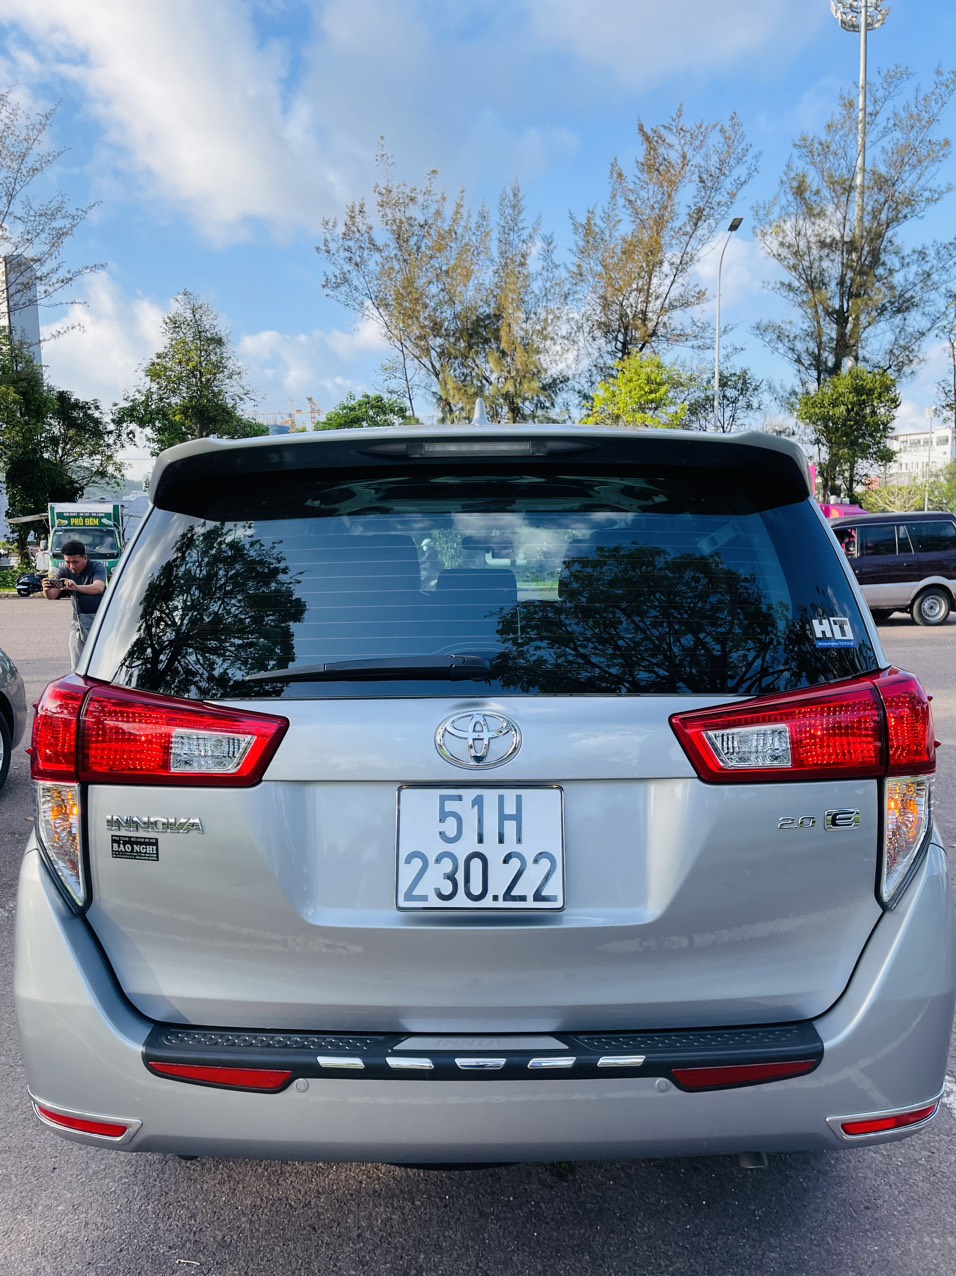 UUsed Car Dealer Trimap đang bán; Toyota Innova E 2.0 sx 2019, đăng ký 2020 một chủ mua mới đầu. -4